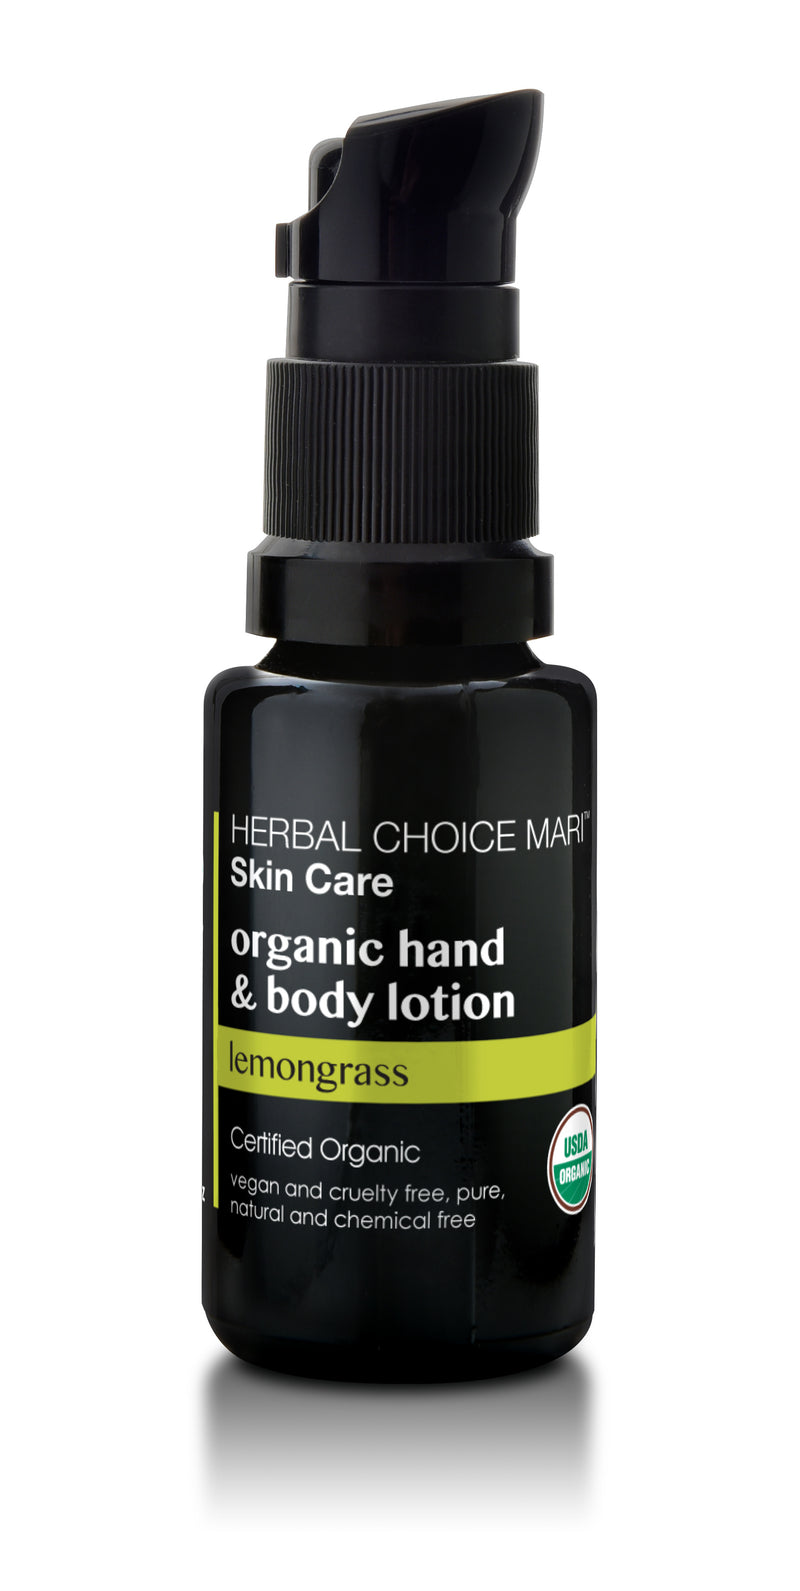 Herbal Choice Mari Organic Hand And Body Lotion, Lemongrass - Herbal Choice Mari Organic Hand And Body Lotion, Lemongrass - Herbal Choice Mari Organic Hand And Body Lotion, Lemongrass